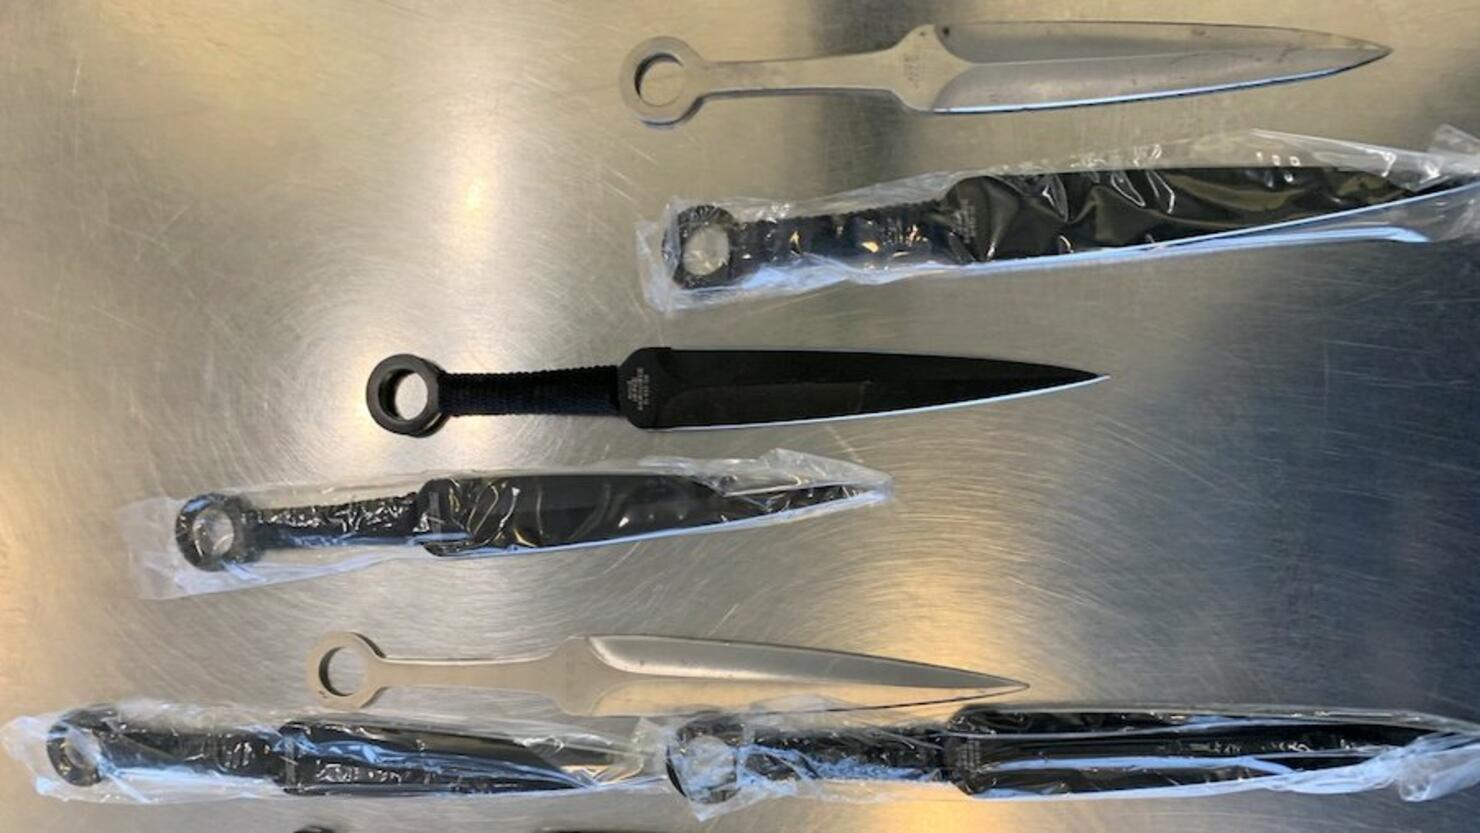 Naruto ninja knife set confiscated at Boston Logan Airport, TSA